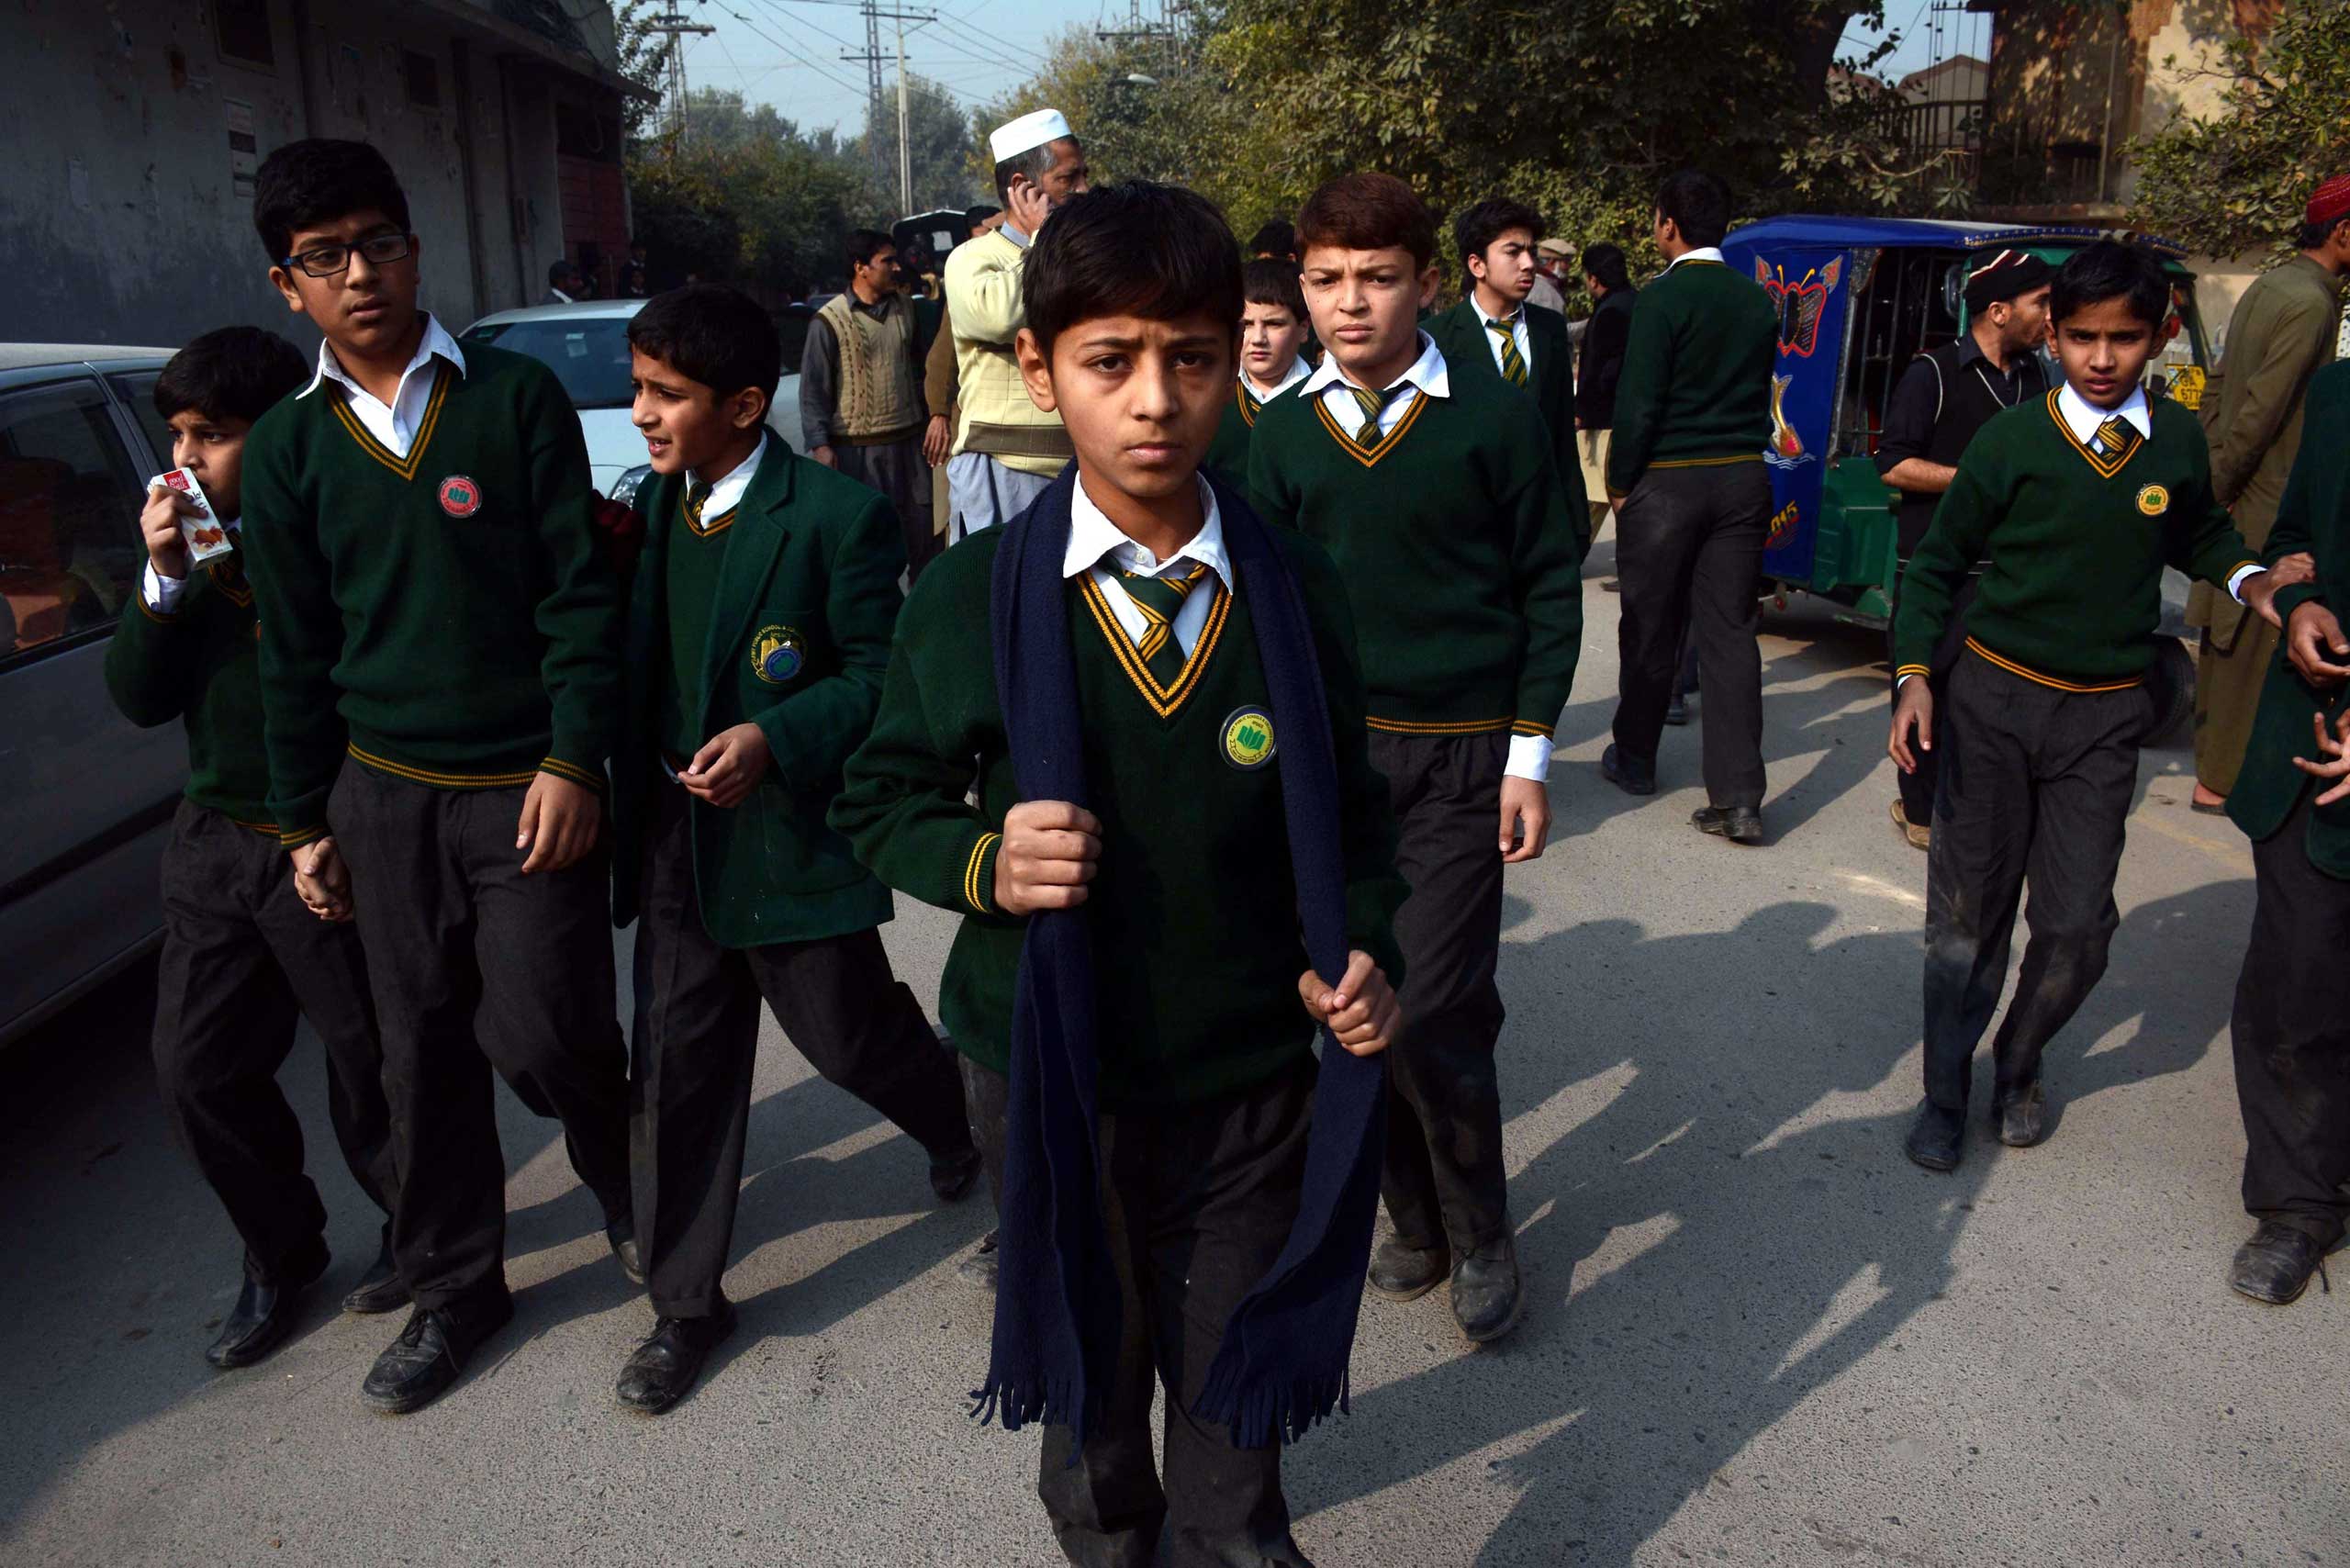 Taliban Attack School Peshawar Pakistan